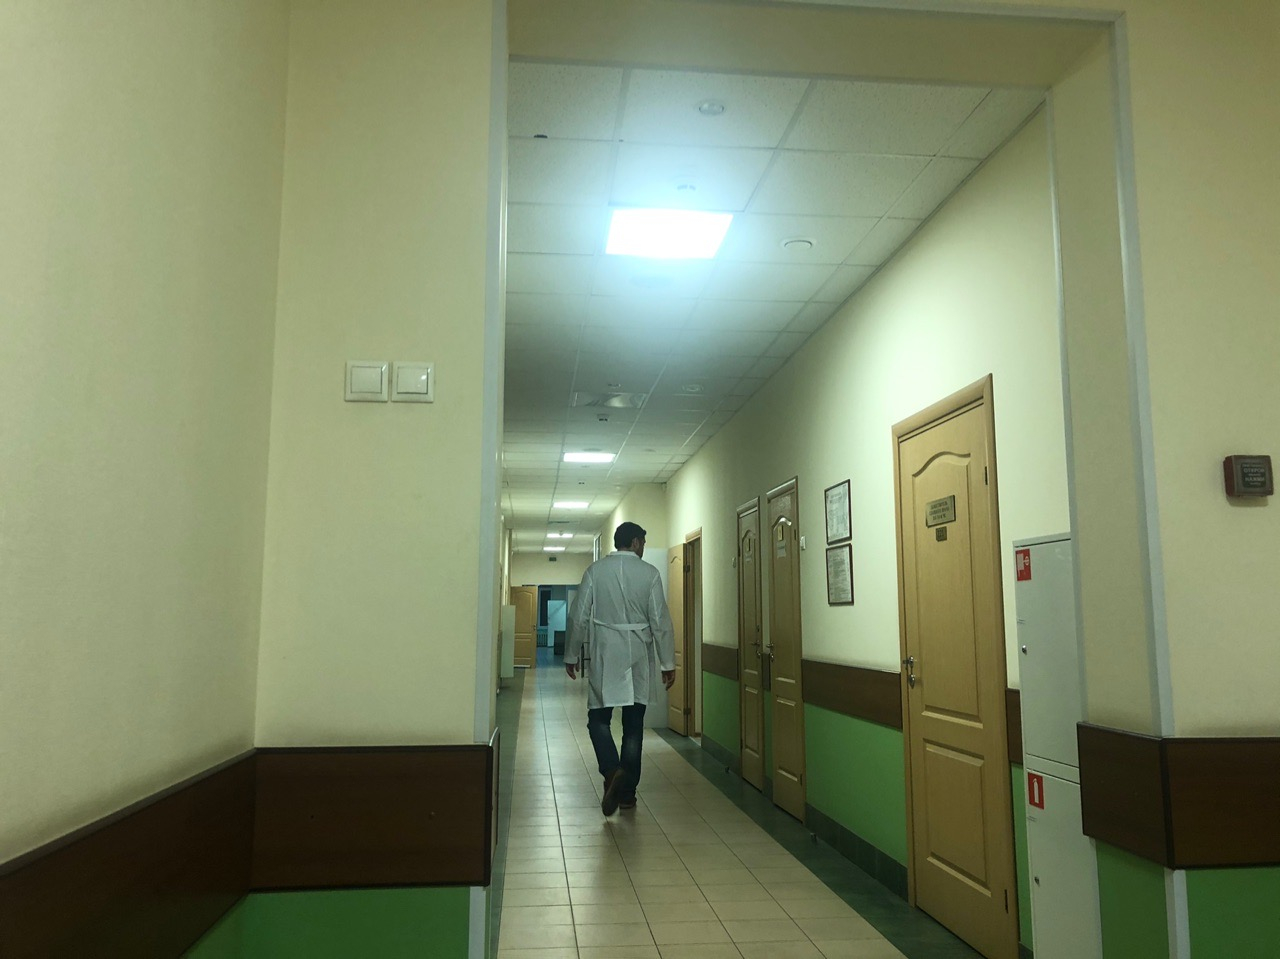 Бесплатно обследование на ВИЧ: в Ярославле проходит Всероссийская акция